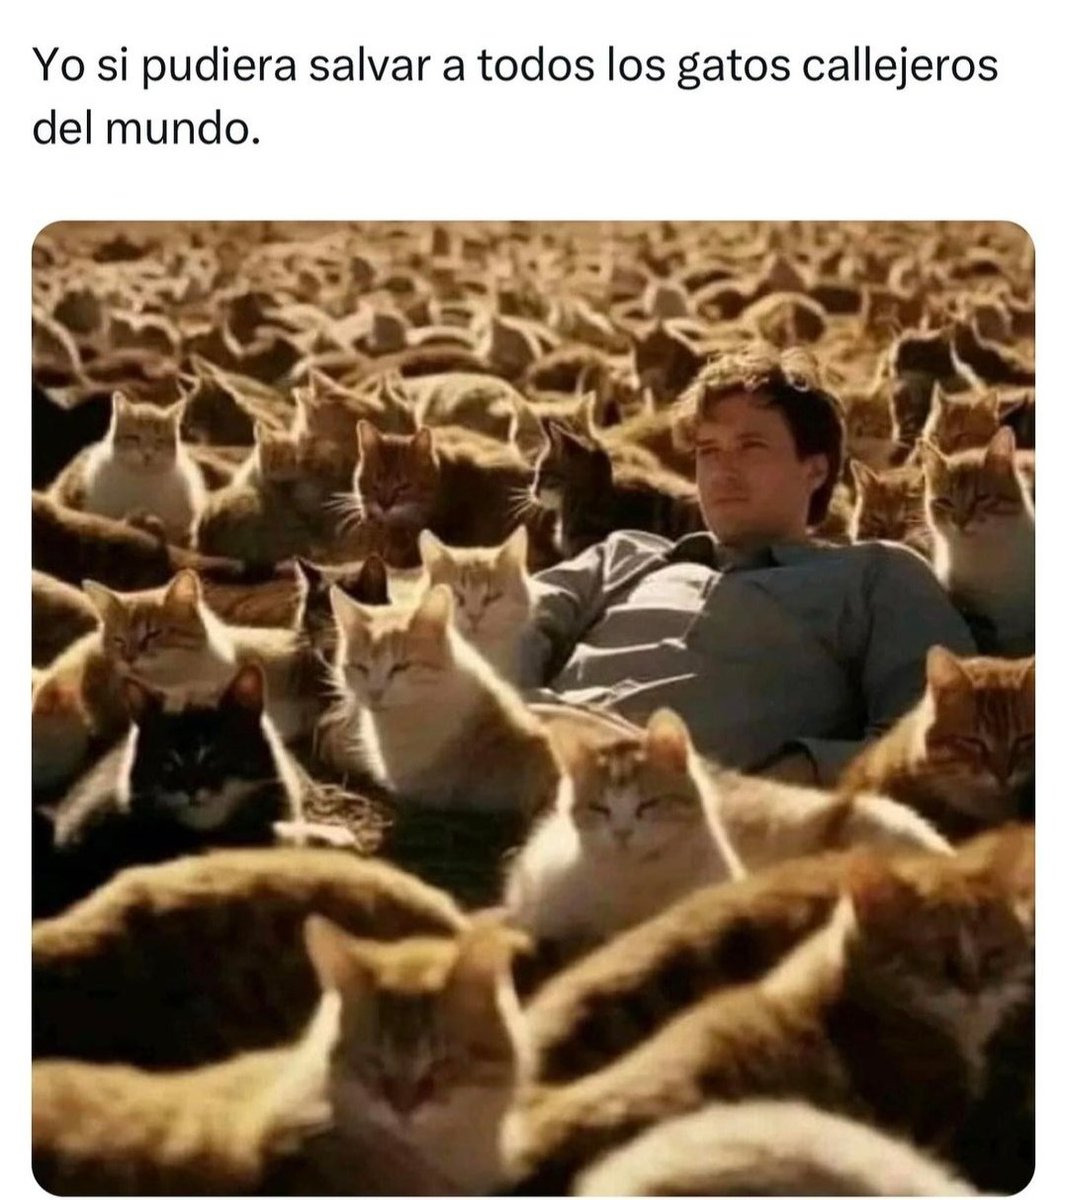 😺😻🐈‍⬛🐱😸🐈😺😻🐈‍⬛🐱😸

#boladepelos #michimeme #CatsOfX #gato #gatos #gatitos #gatosfelices #catslovers #mascota #mascotas #mascotasfelices #felinos #felinoslindos #michis  #mininos